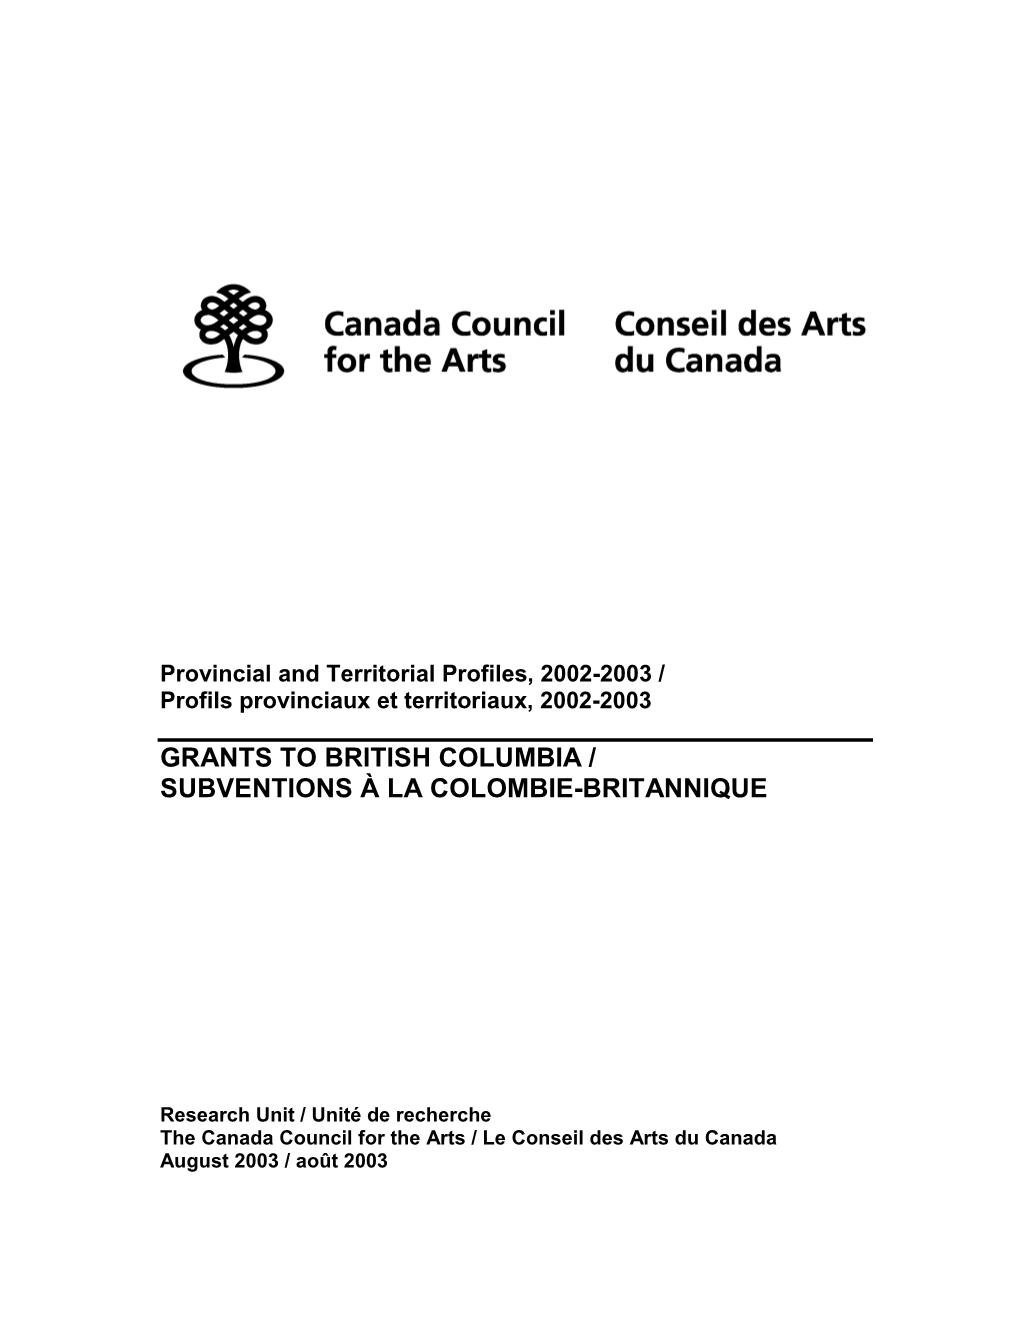 Research Unit / Unité De Recherche the Canada Council for the Arts / Le Conseil Des Arts Du Canada August 2003 / Août 2003 Funding to British Columbia, 2002-2003